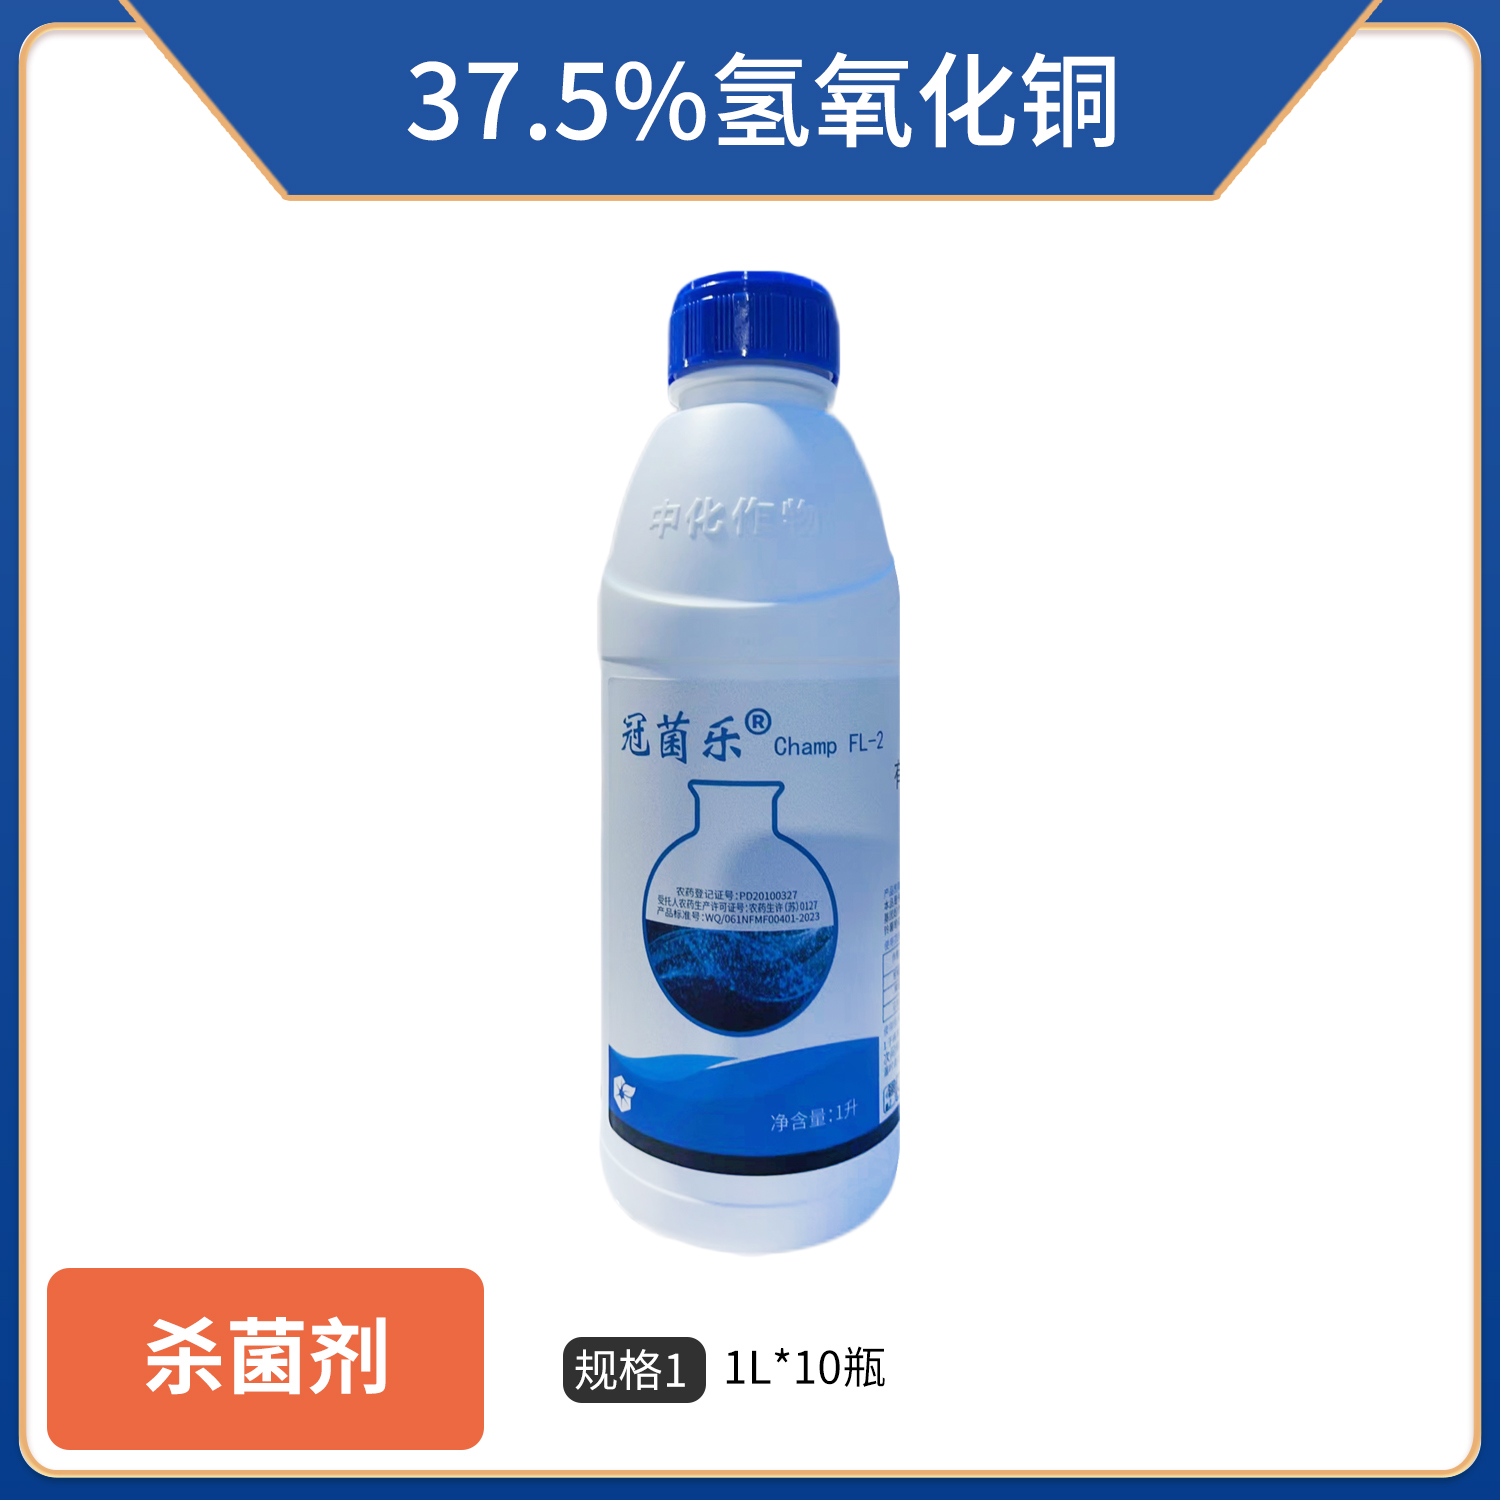 冠菌乐-37.5%氢氧化铜-悬浮剂